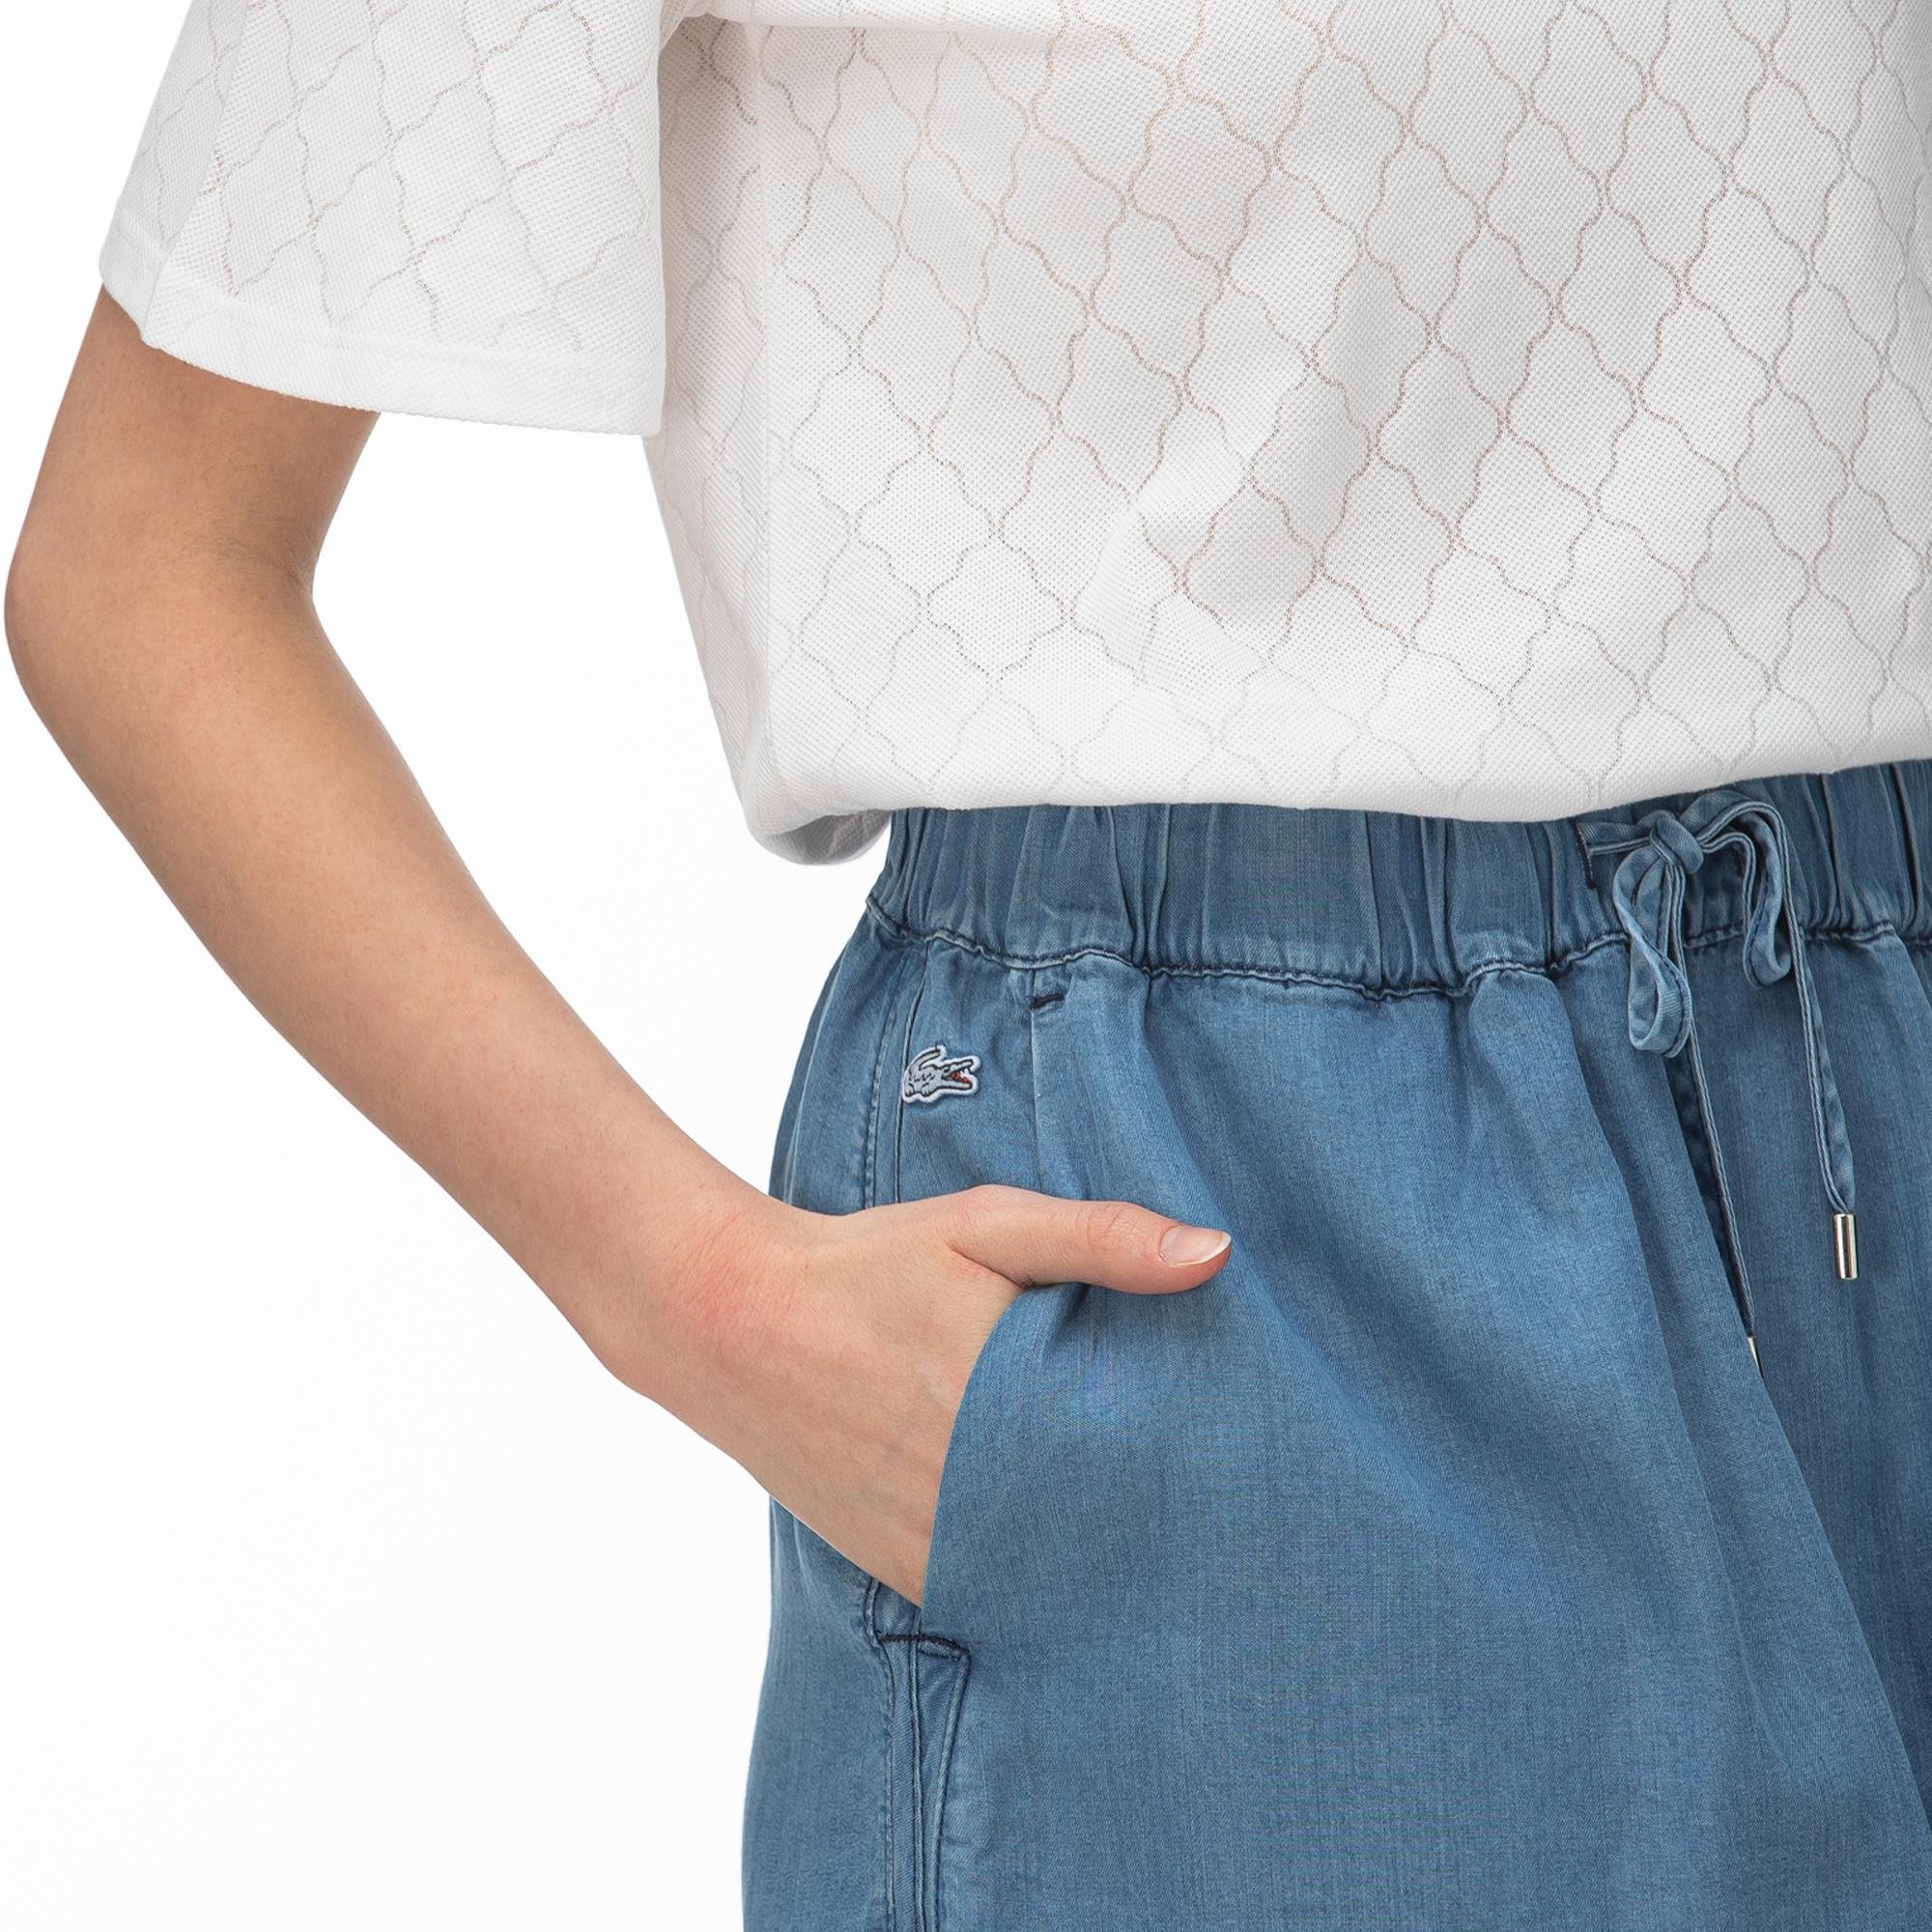 Lacoste Women's Denim Skirt